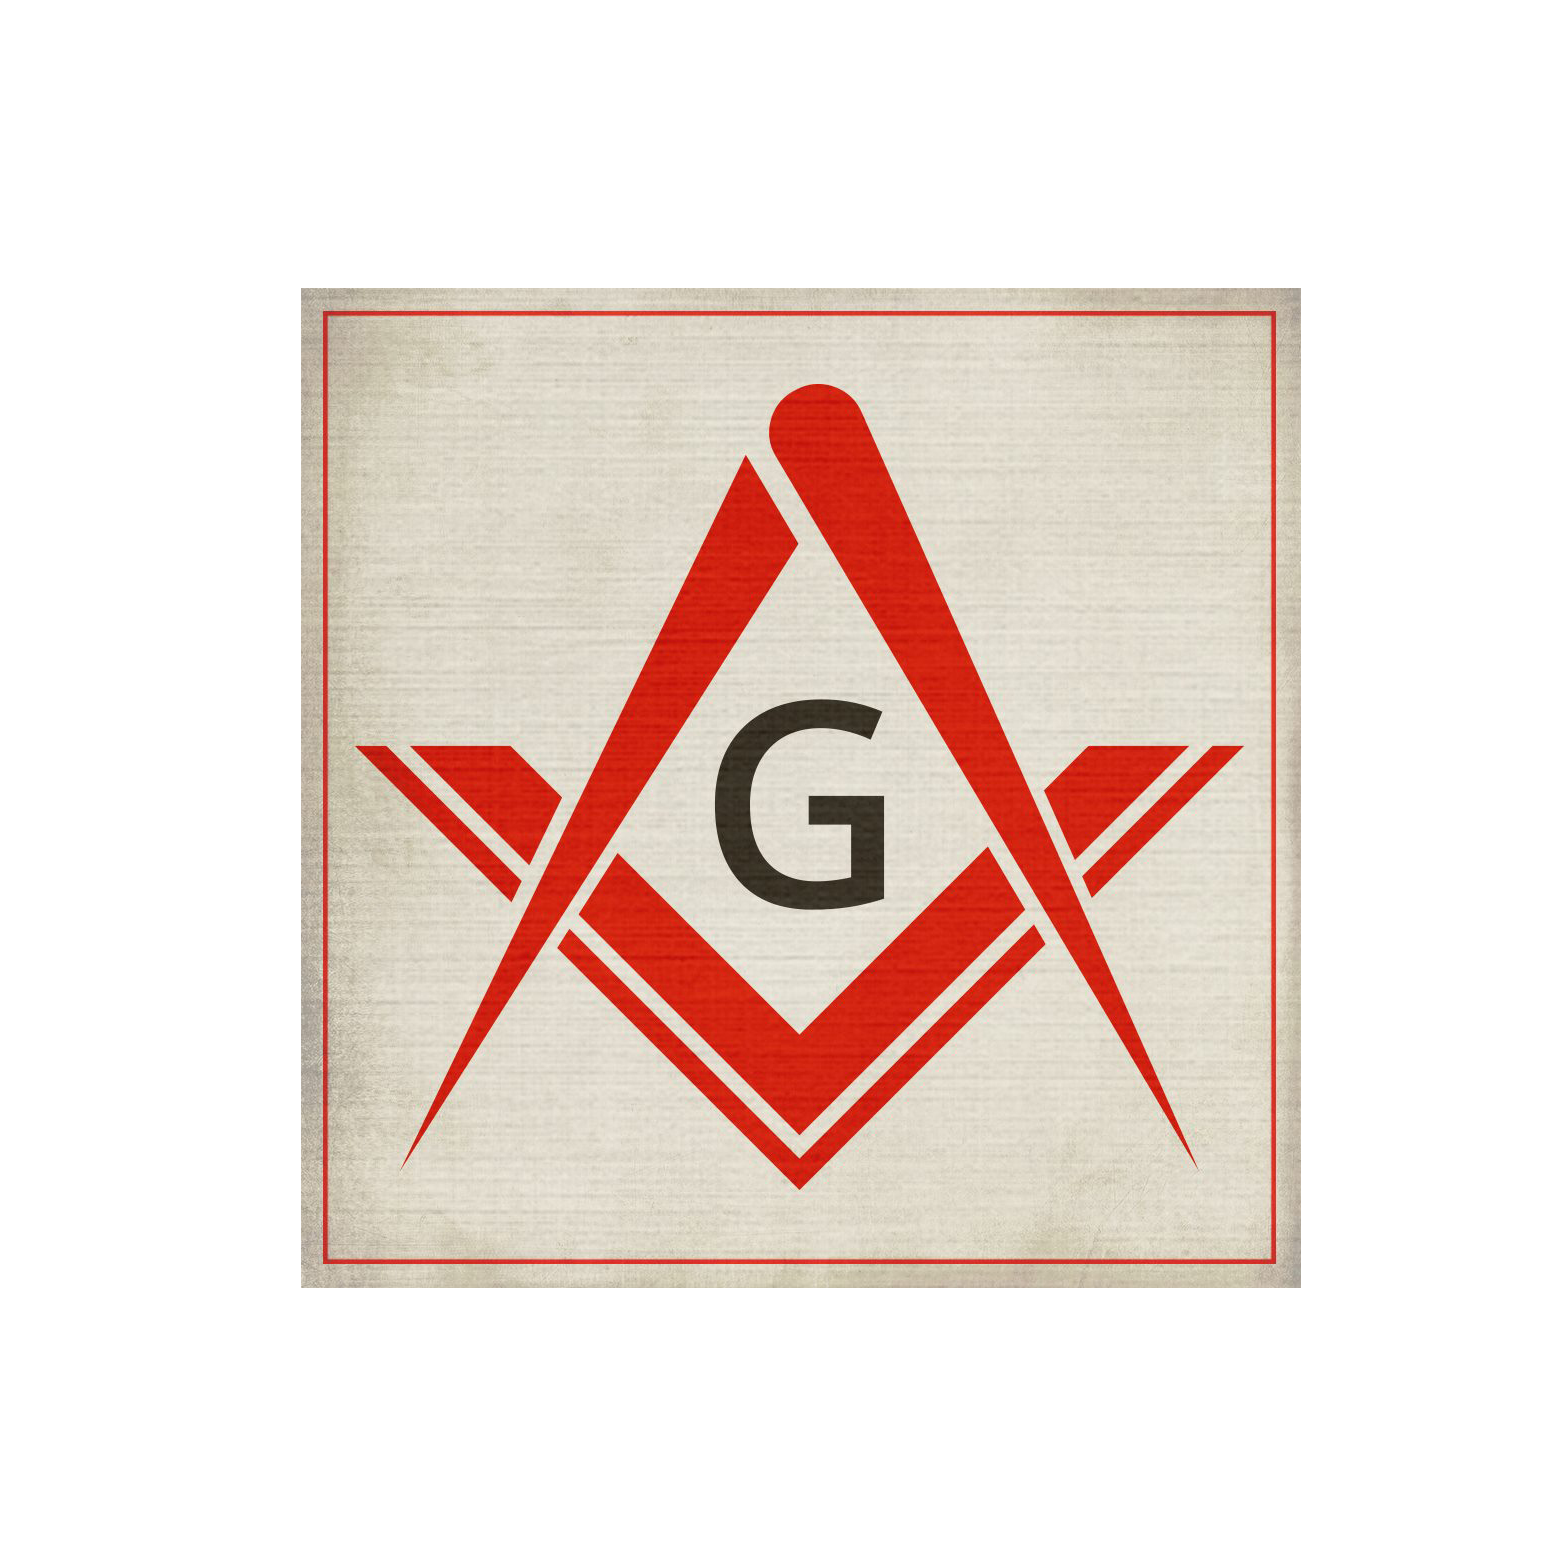 Placerville Masonic Lodge #26